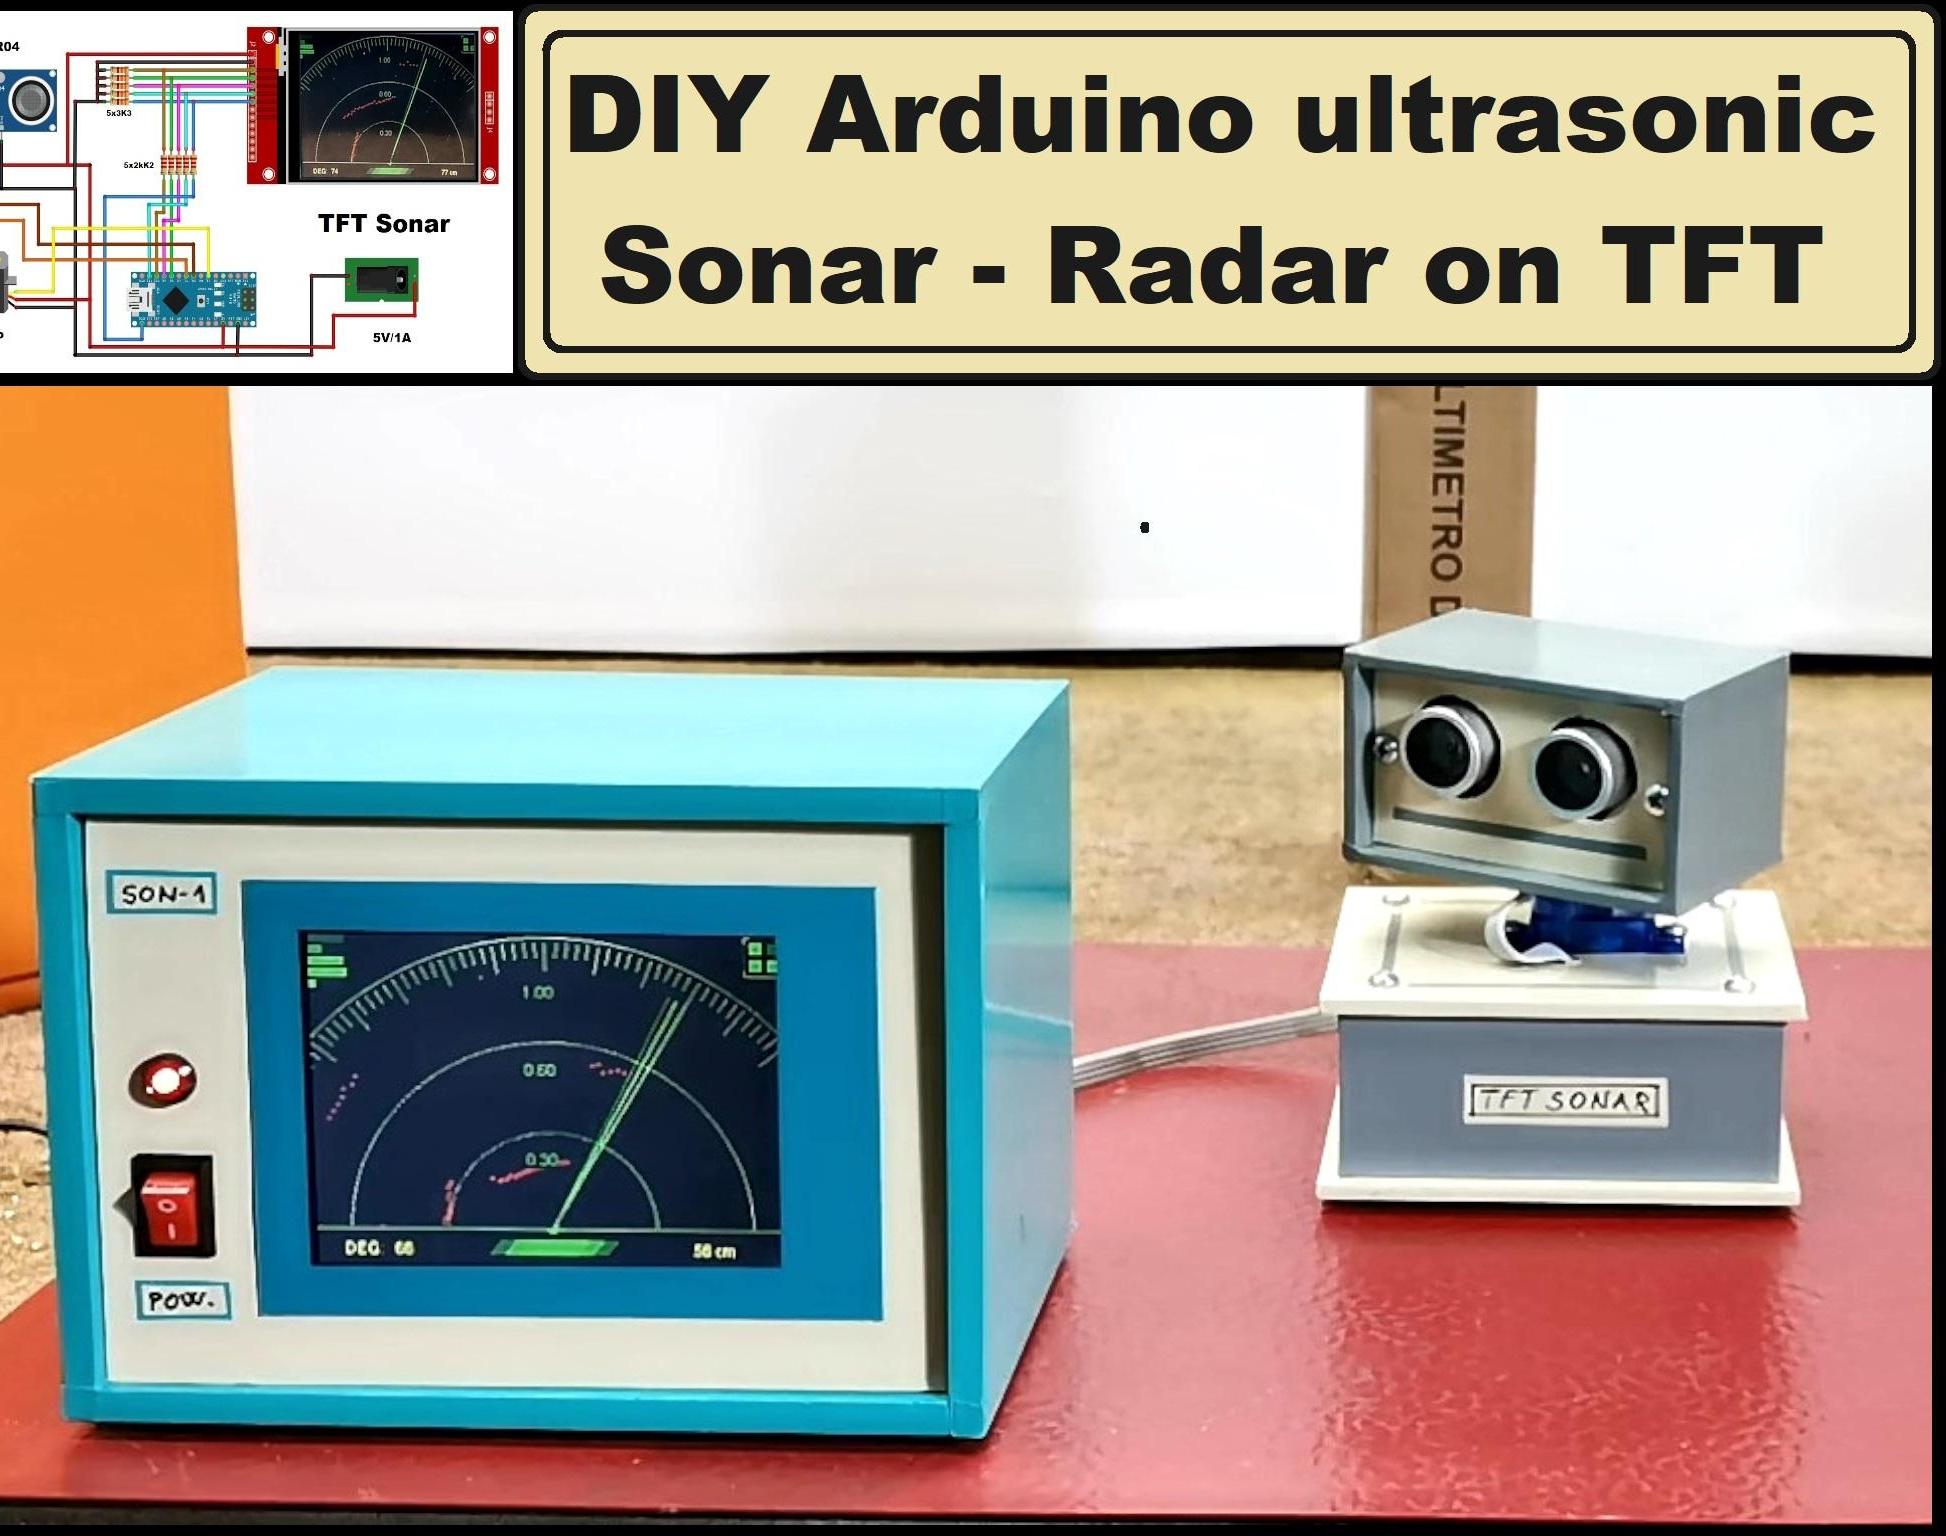 DIY Arduino Ultrasonic Sonar - Radar on TFT Display